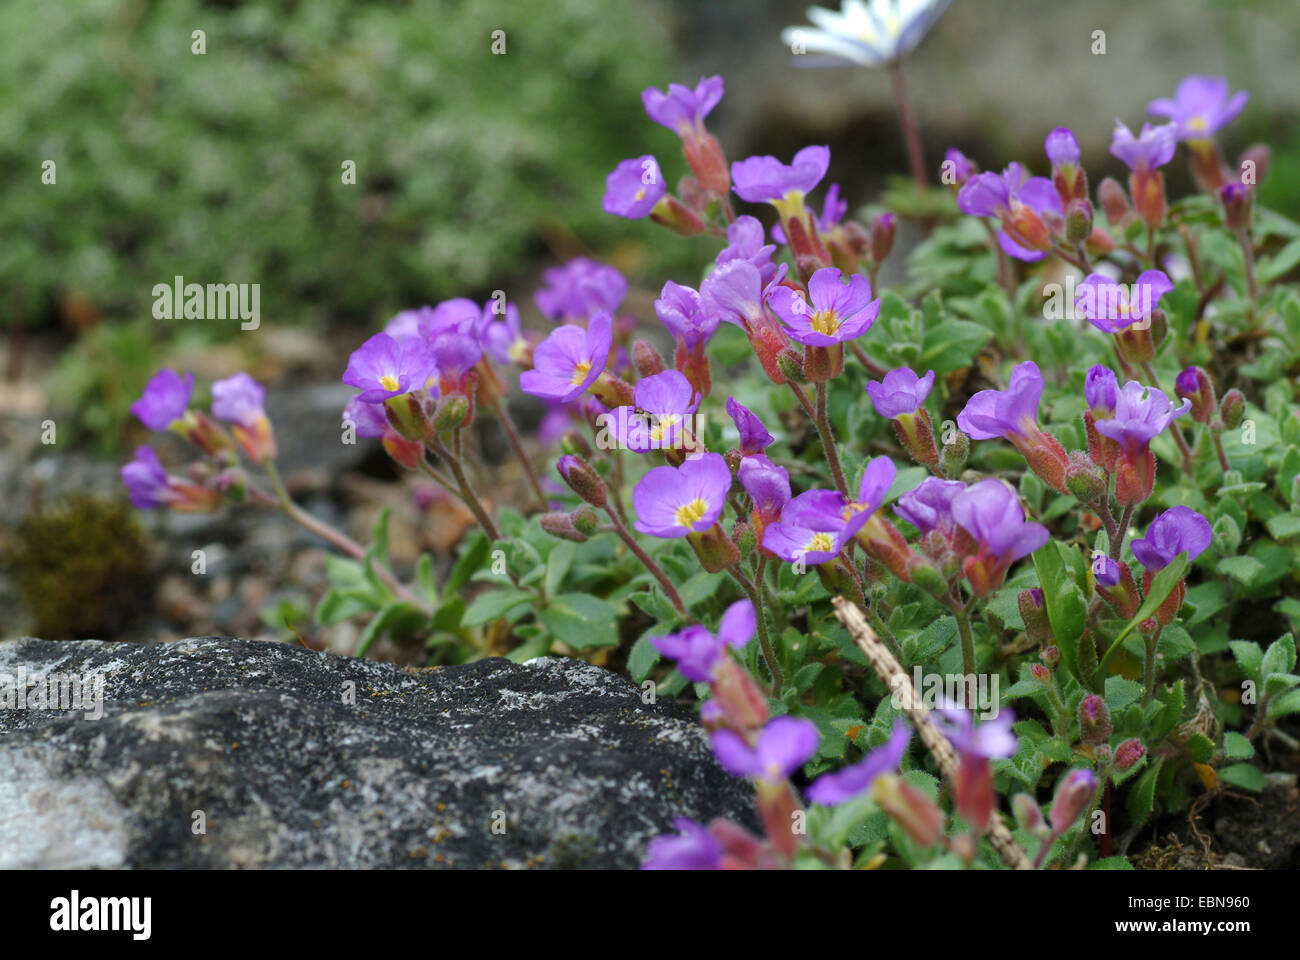 Aubrieta (Aubrieta kotschyi), blooming Stock Photo